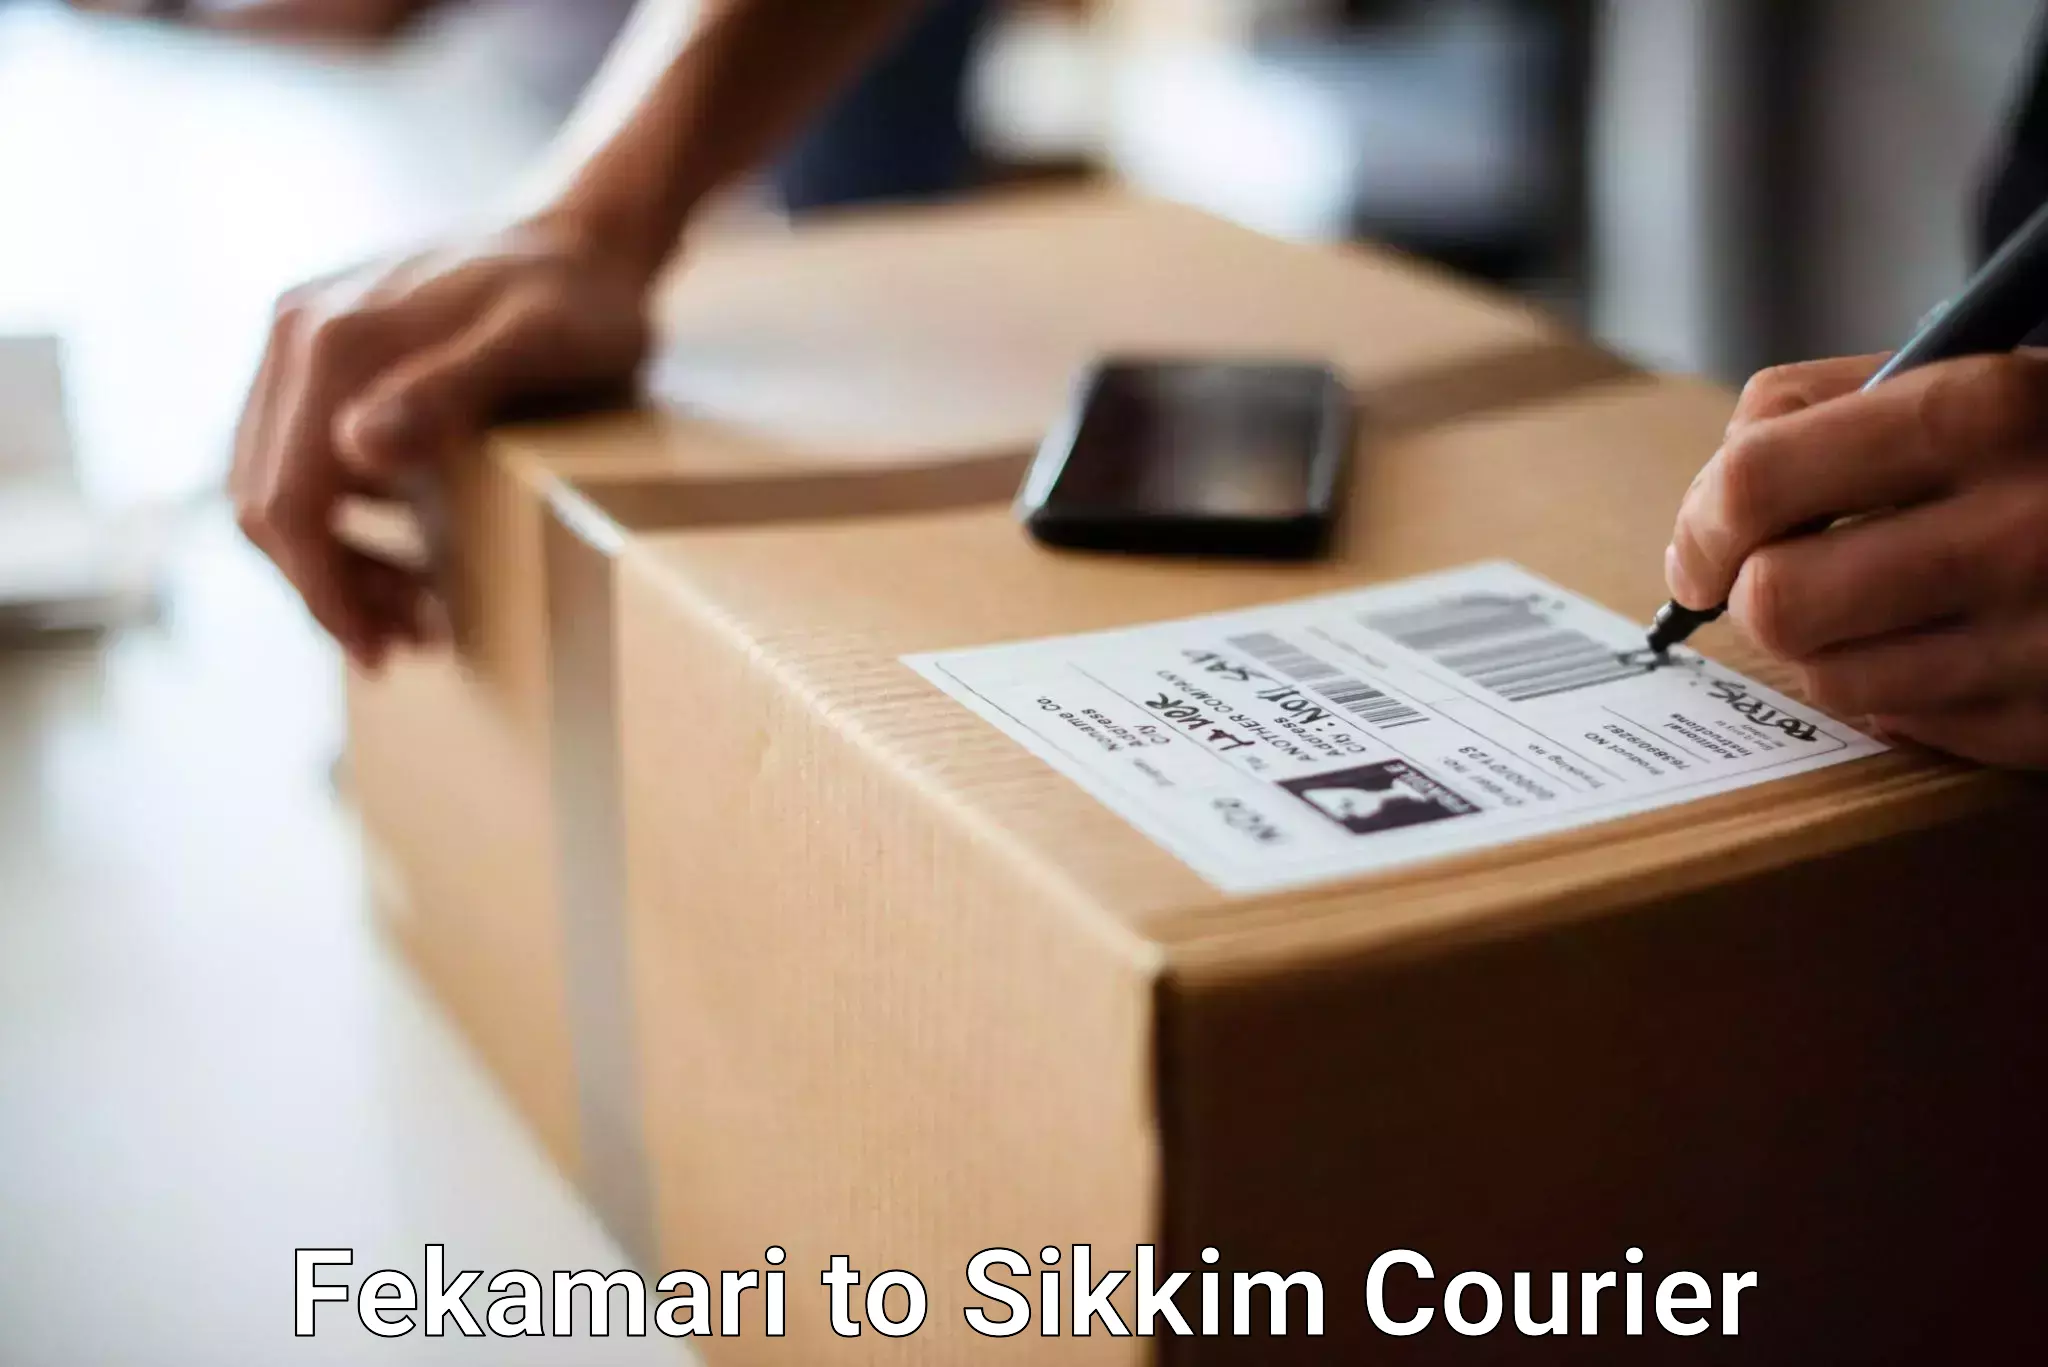 Luggage transit service Fekamari to Sikkim